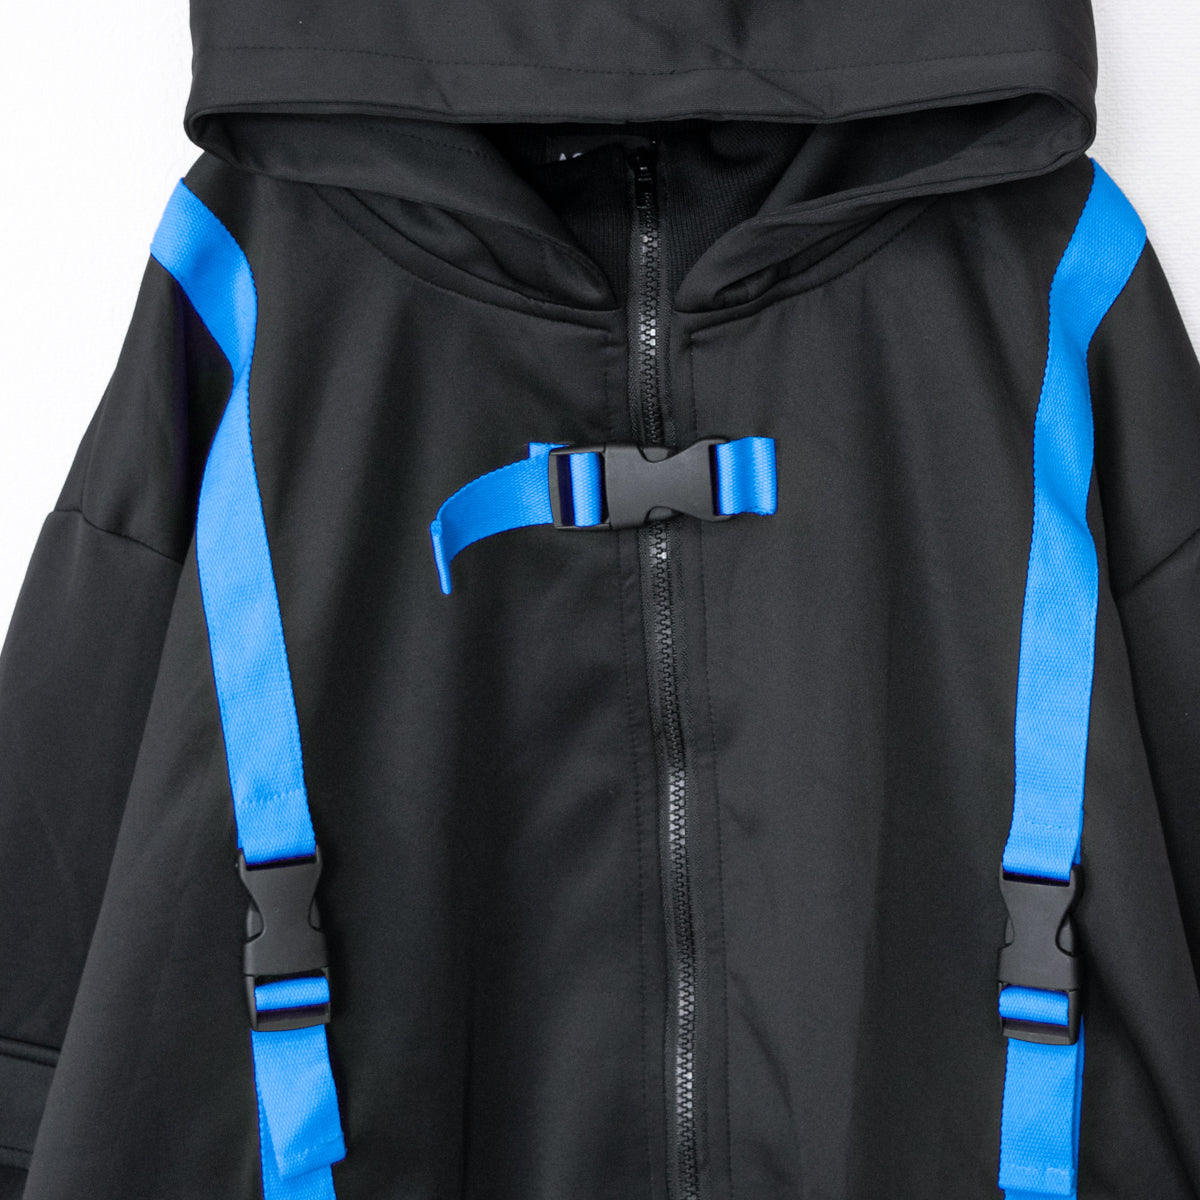 ACDC RAG CYBER PUNK vortex jacket NEON BLUE BLACK